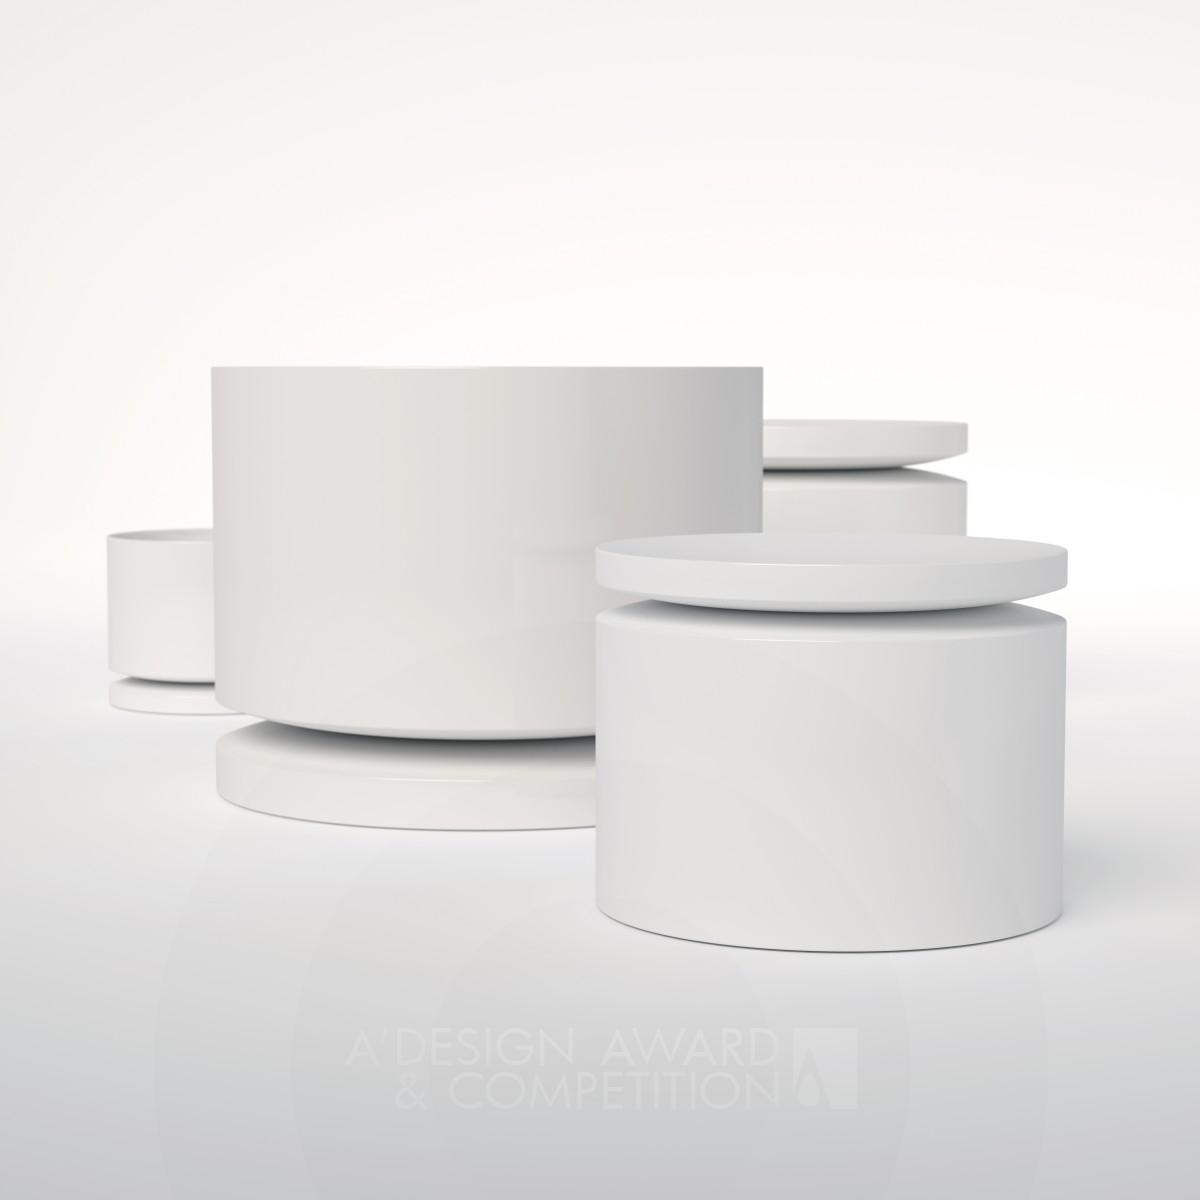 For One Multifunctional Tableware by Justas Silkauskas